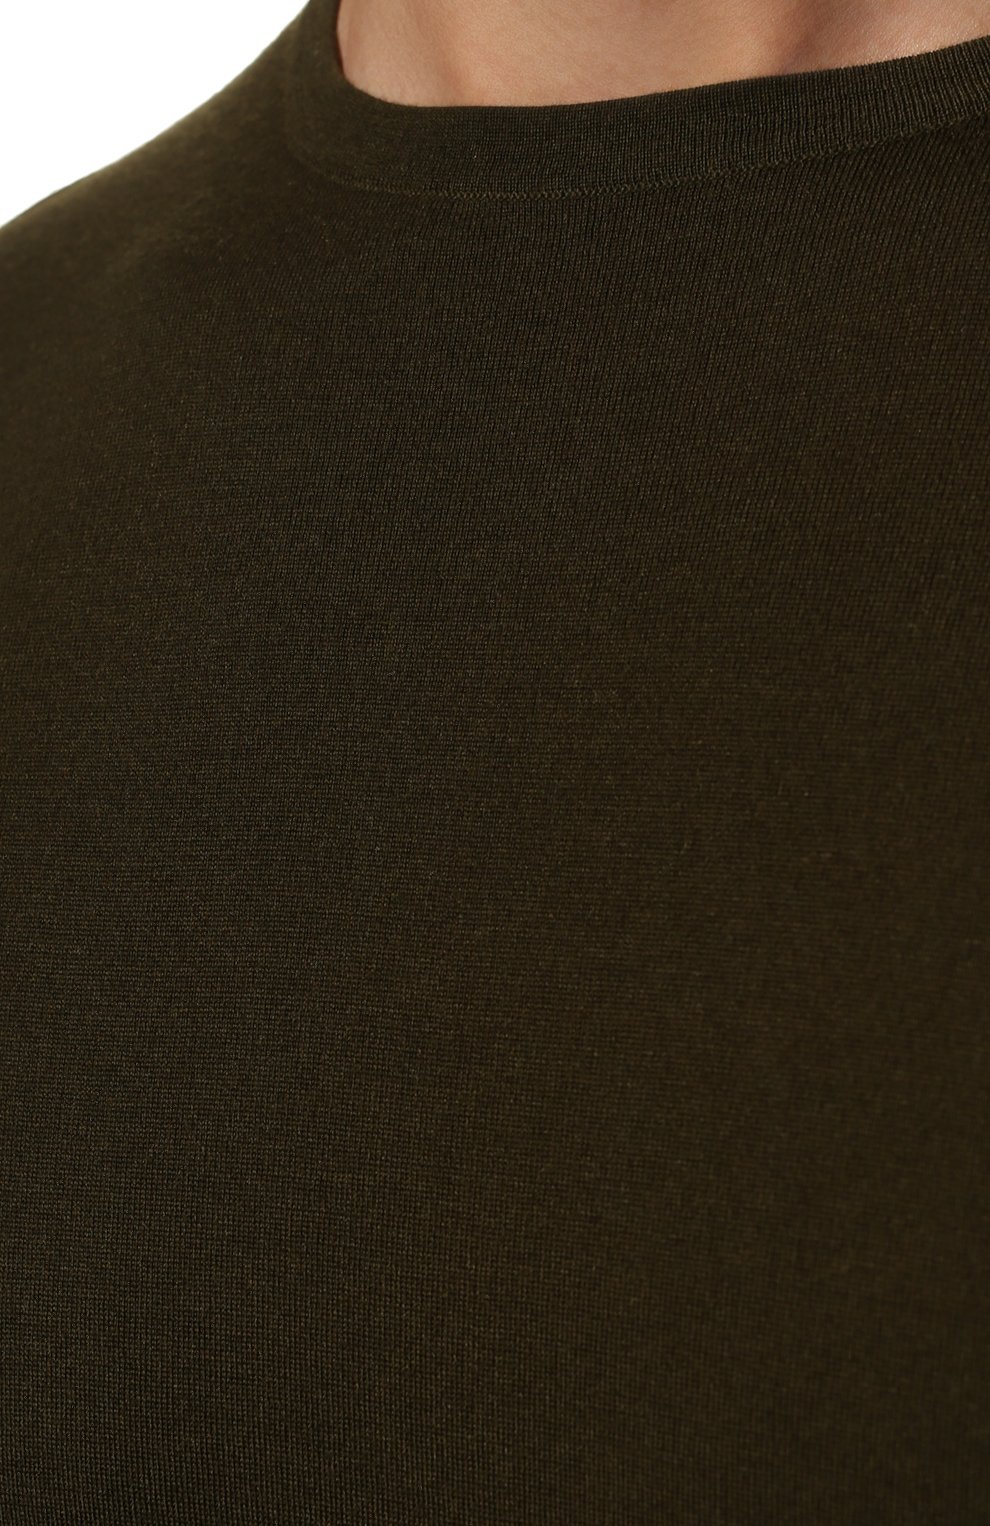 Мужской шерстяной джемпер LORO PIANA темно-зеленого цвета, арт. FAI1916 | Фото 5 (Мужское Кросс-КТ: Джемперы; Материал внешний: Шерсть; Рукава: Длинные; Принт: Без принта; Длина (для топов): Стандартные; Вырез: Круглый)